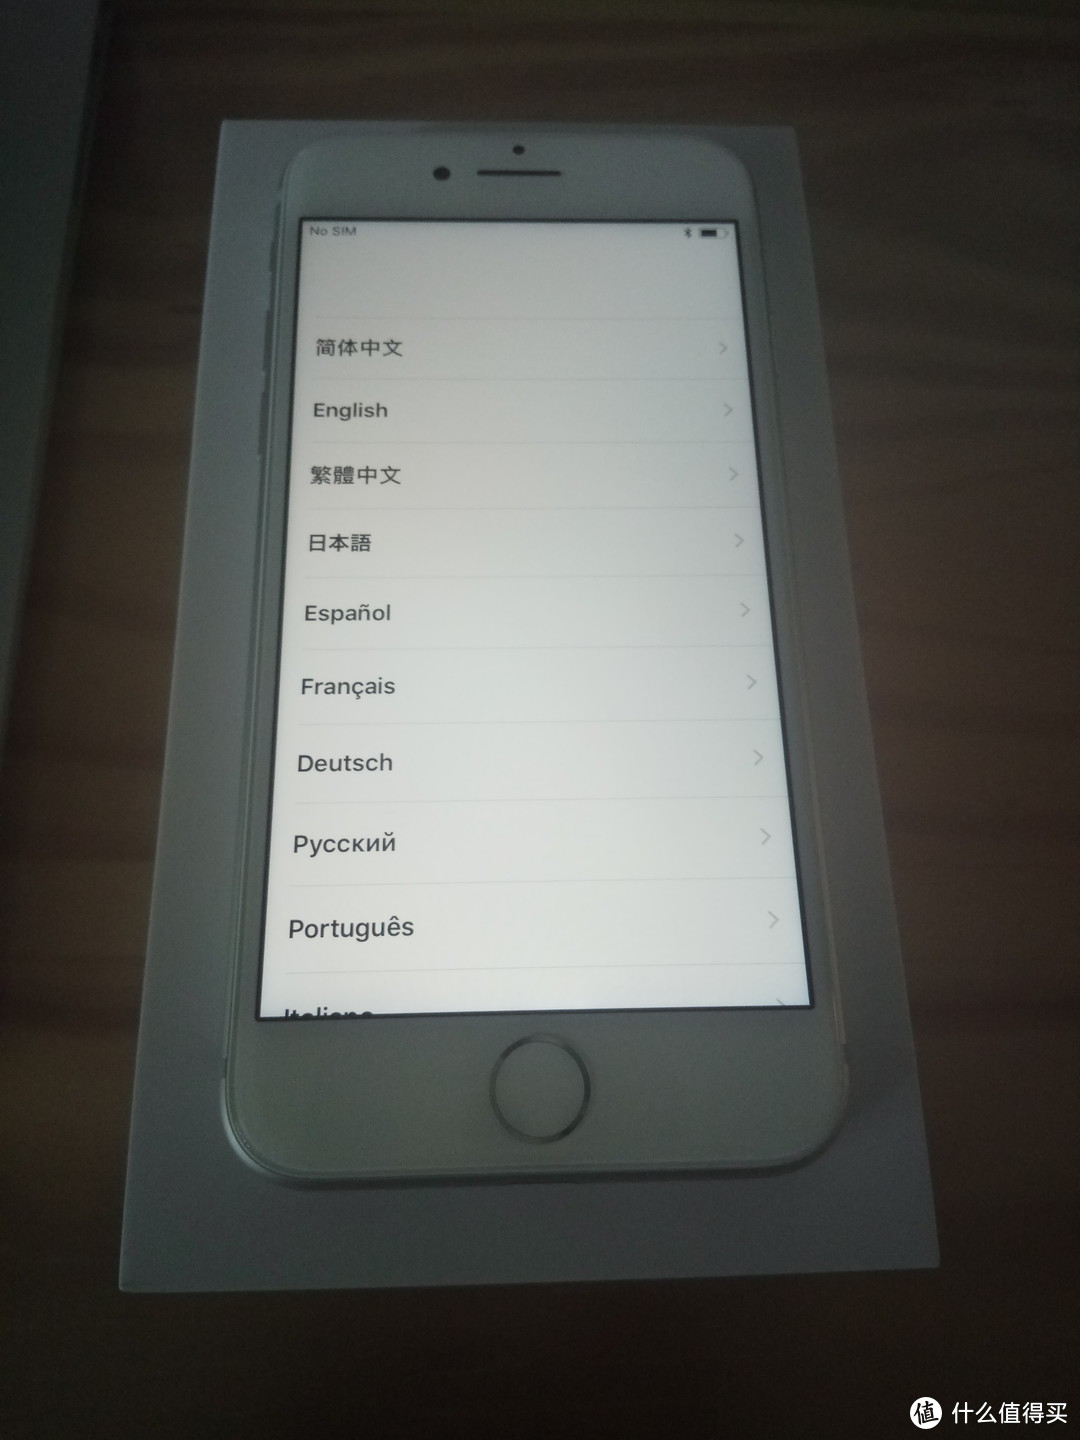 语言设置，可以看到iOS 11的排版更加分散